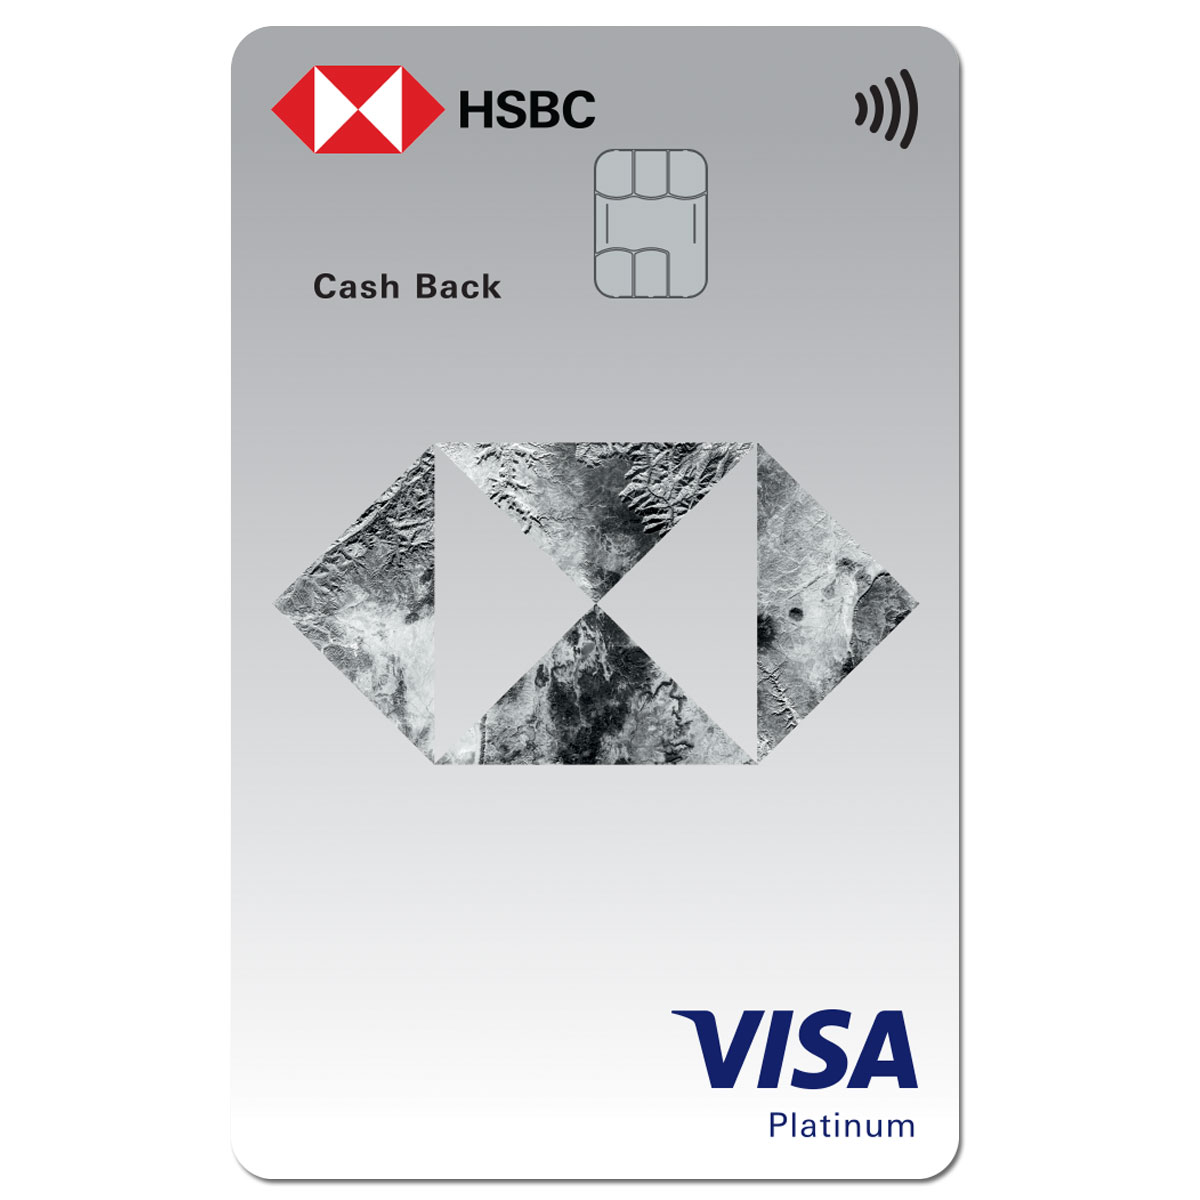 HSBC là một trong những tên tuổi đáng tin cậy và được yêu thích trong lĩnh vực cung cấp thẻ tín dụng chất lượng. Hãy tham khảo hình ảnh liên quan để hiểu rõ hơn về những loại thẻ tín dụng HSBC đáng giá và có nhiều ưu đãi hấp dẫn.